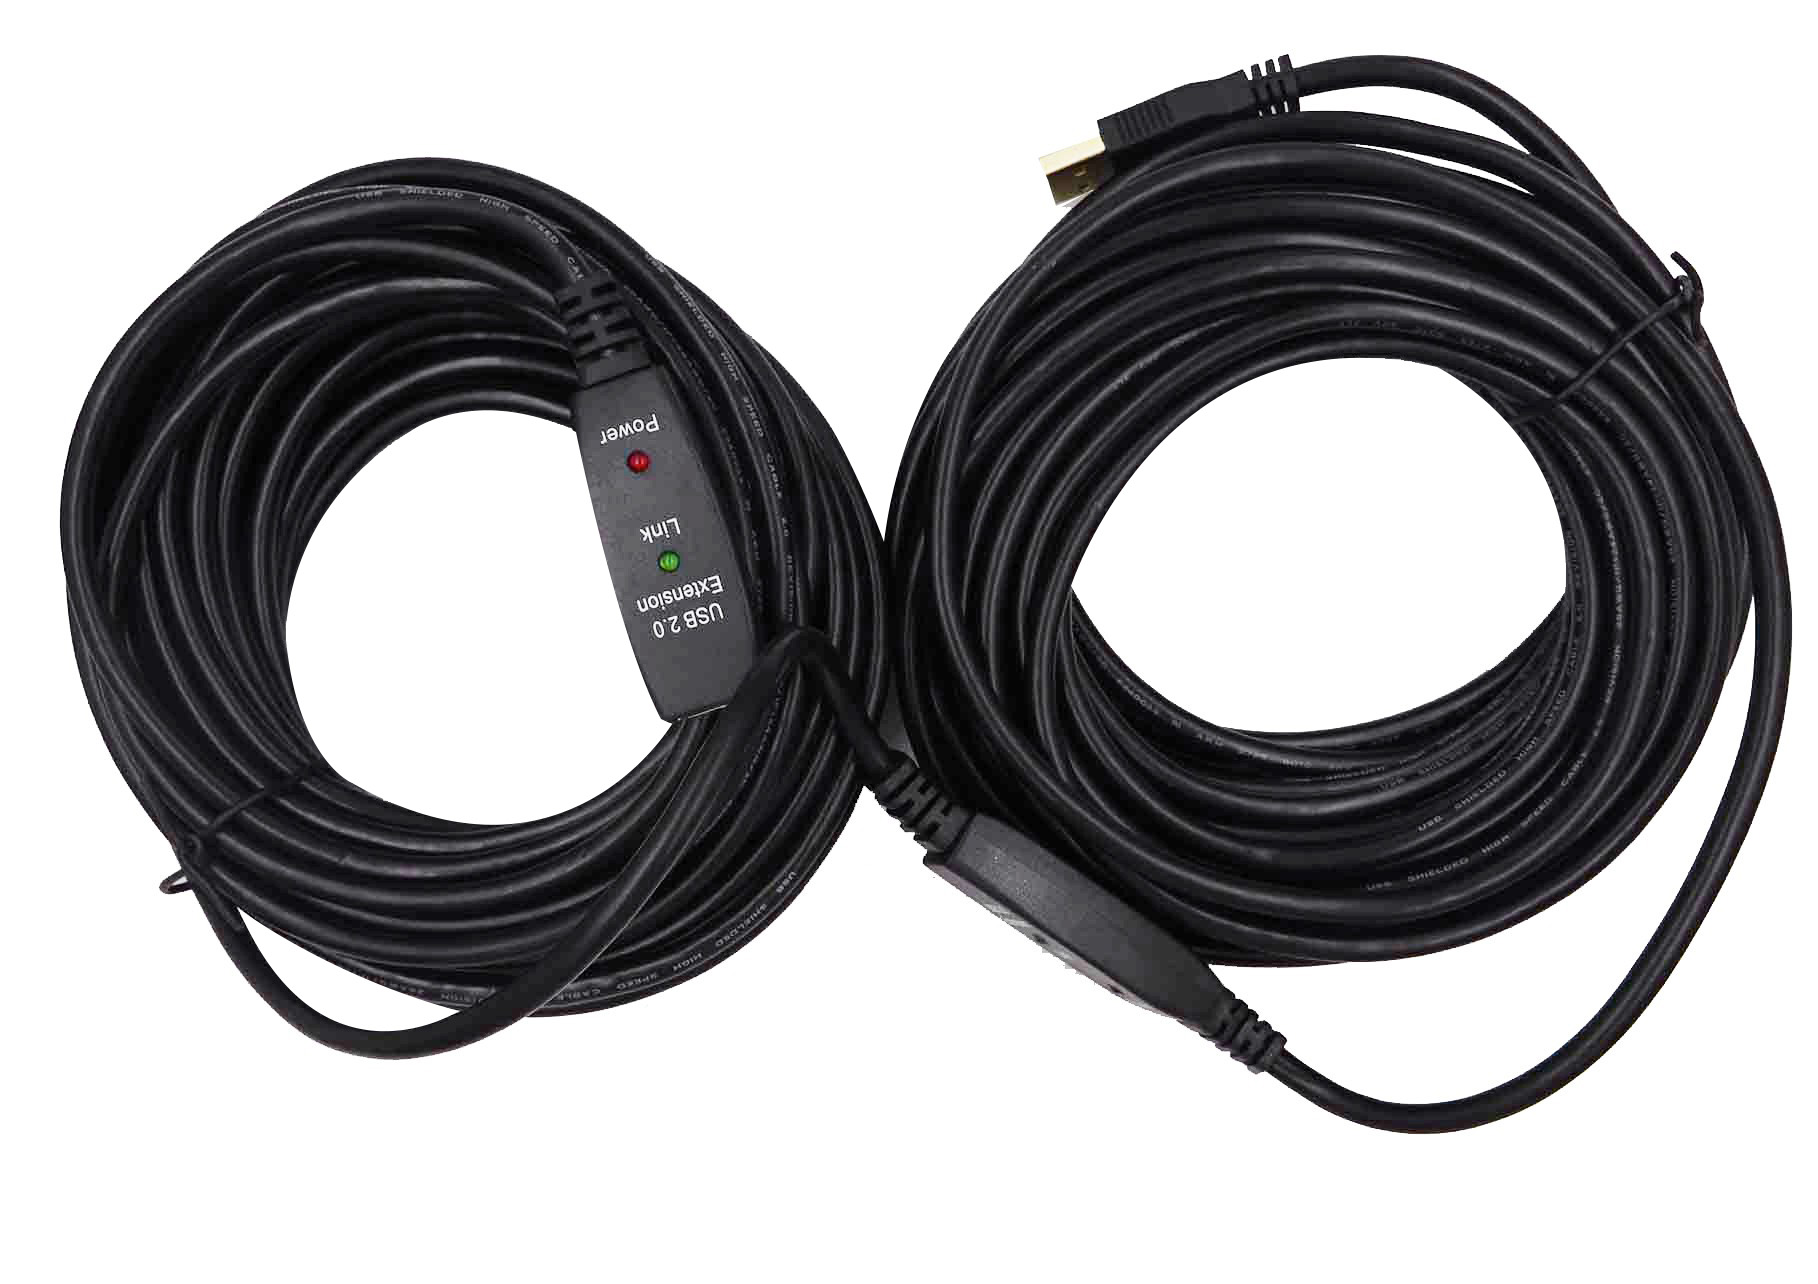 CSL - 10m câble de rallonge USB 2.0 avec amplificateur actif répéteur